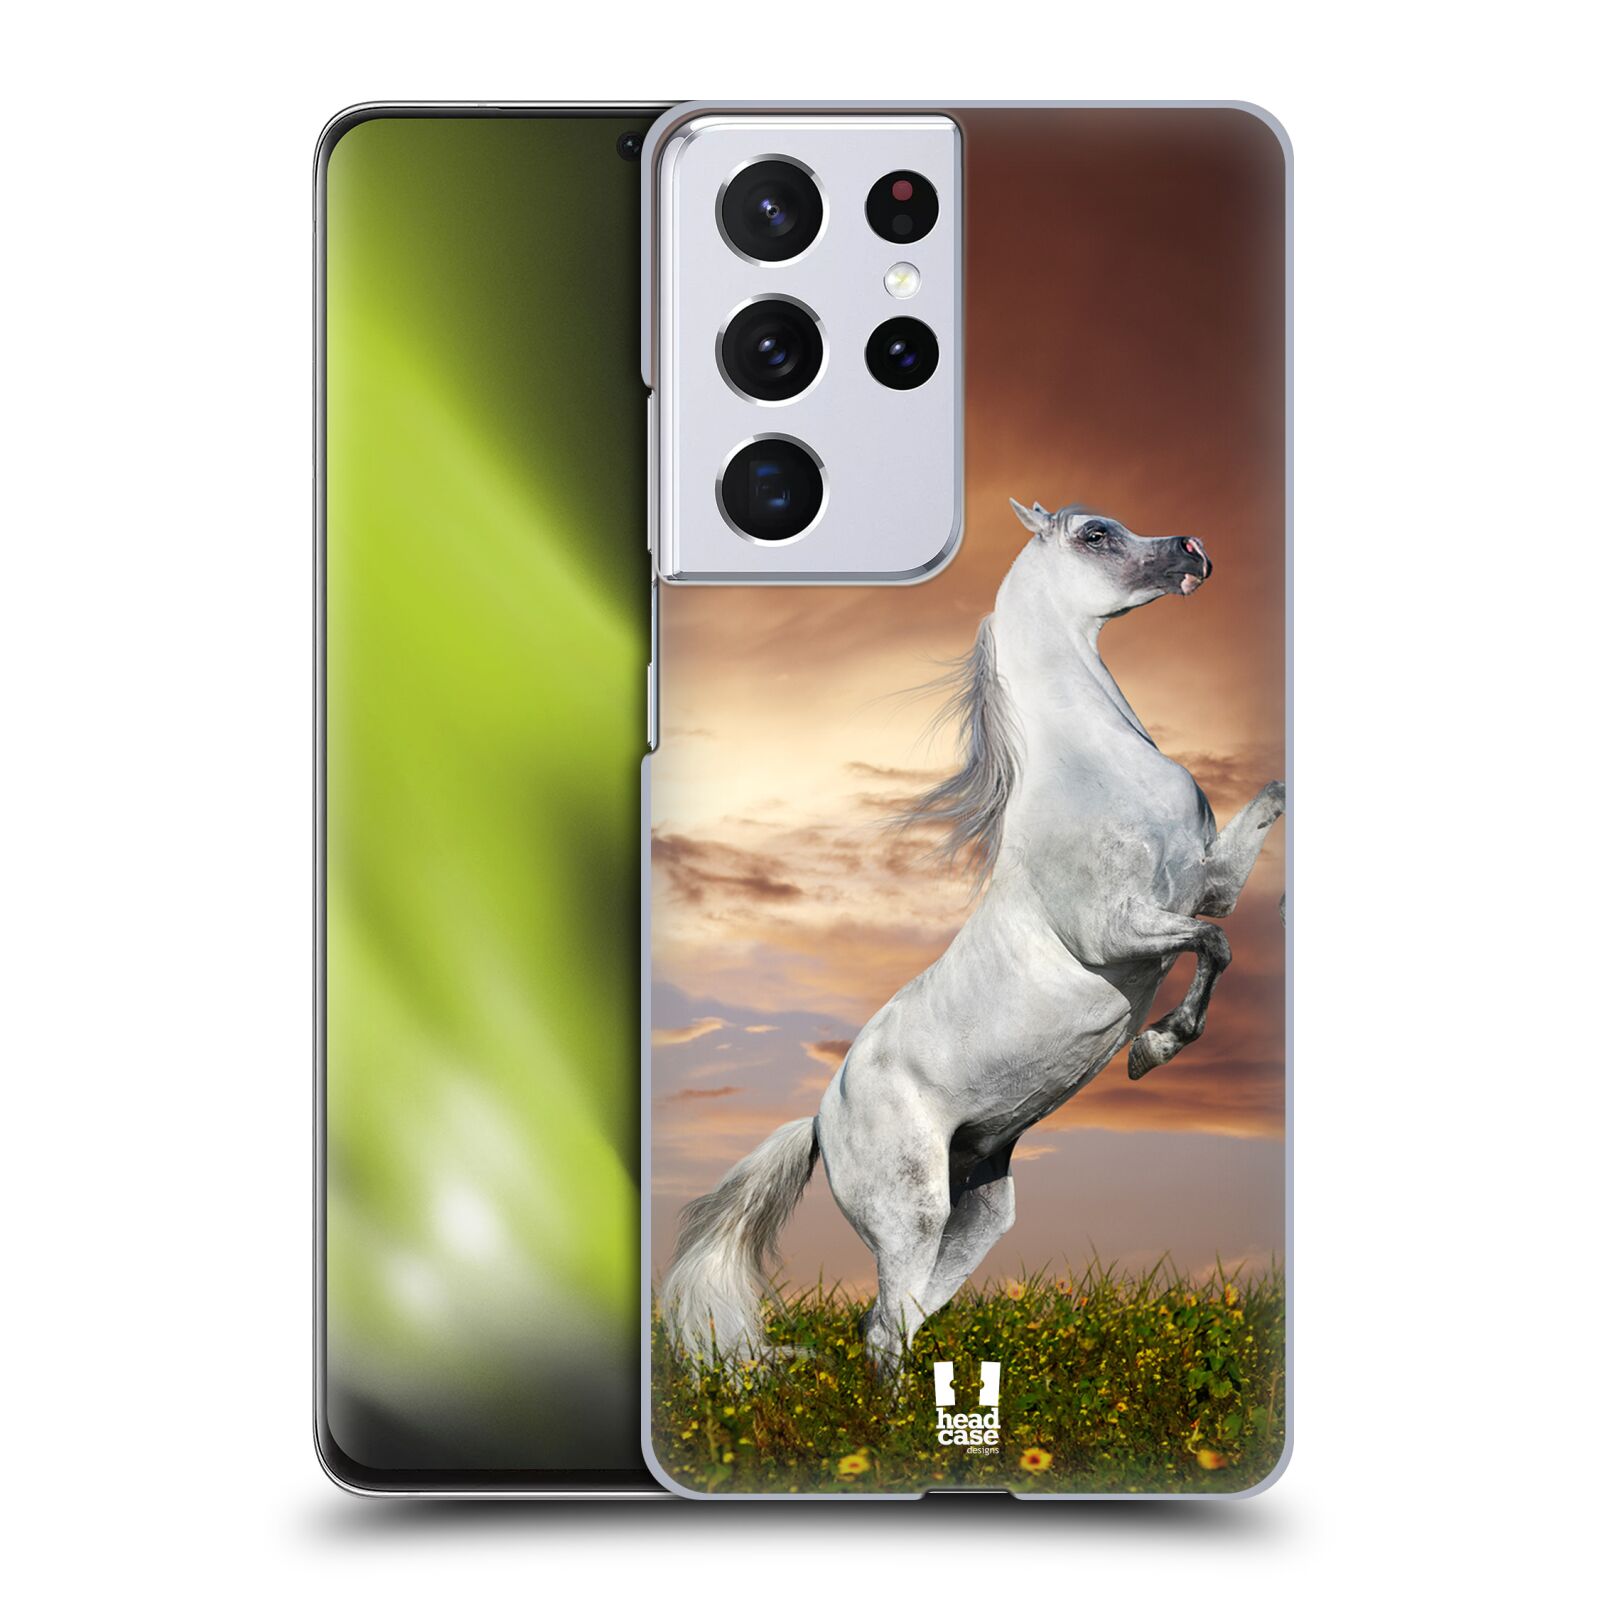 Zadní obal pro mobil Samsung Galaxy S21 ULTRA 5G - HEAD CASE - Svět zvířat divoký kůň